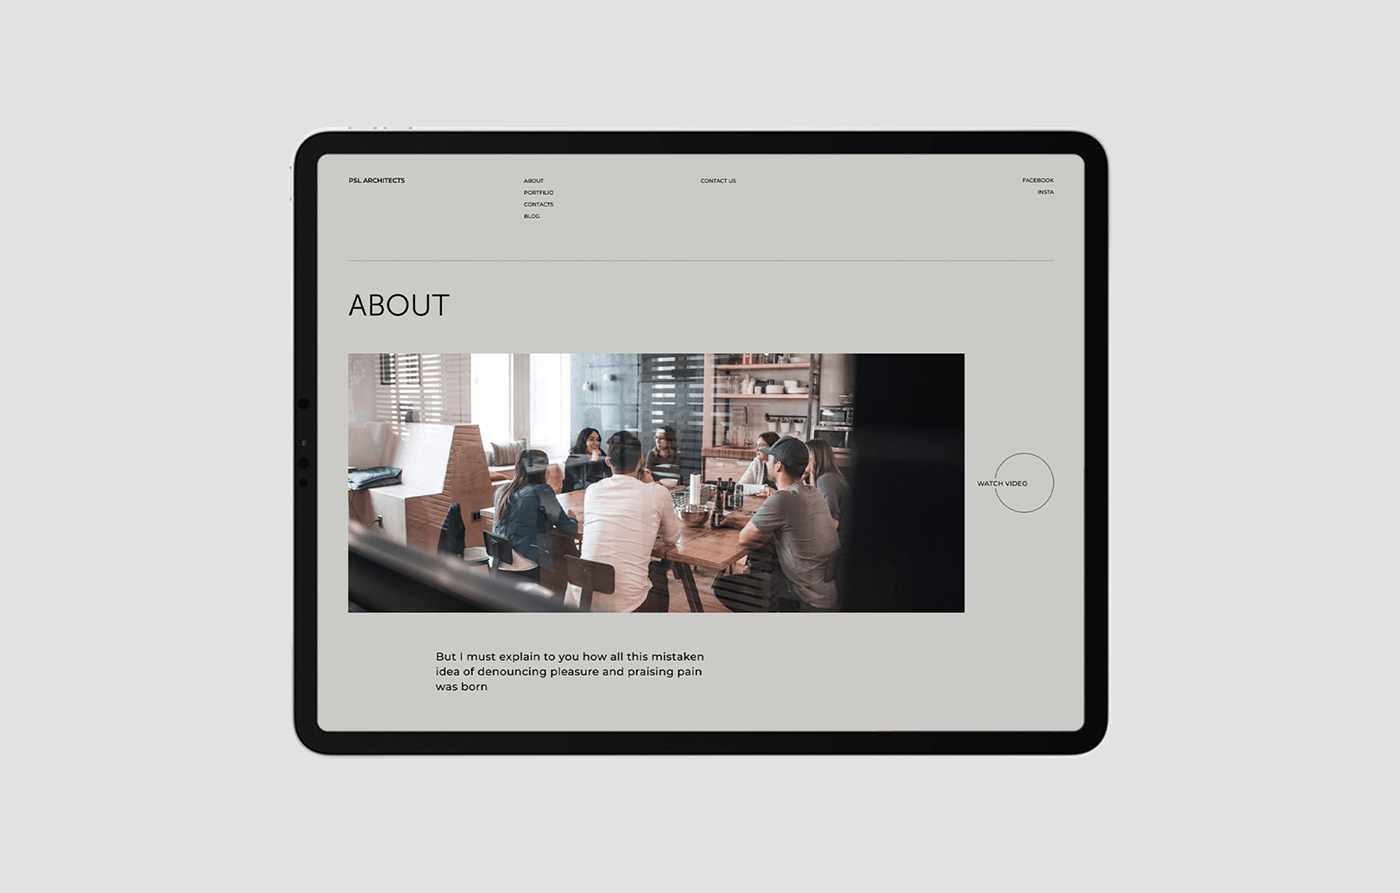 agency architecture Interior minimal studio UI ux Web Design  portfolio